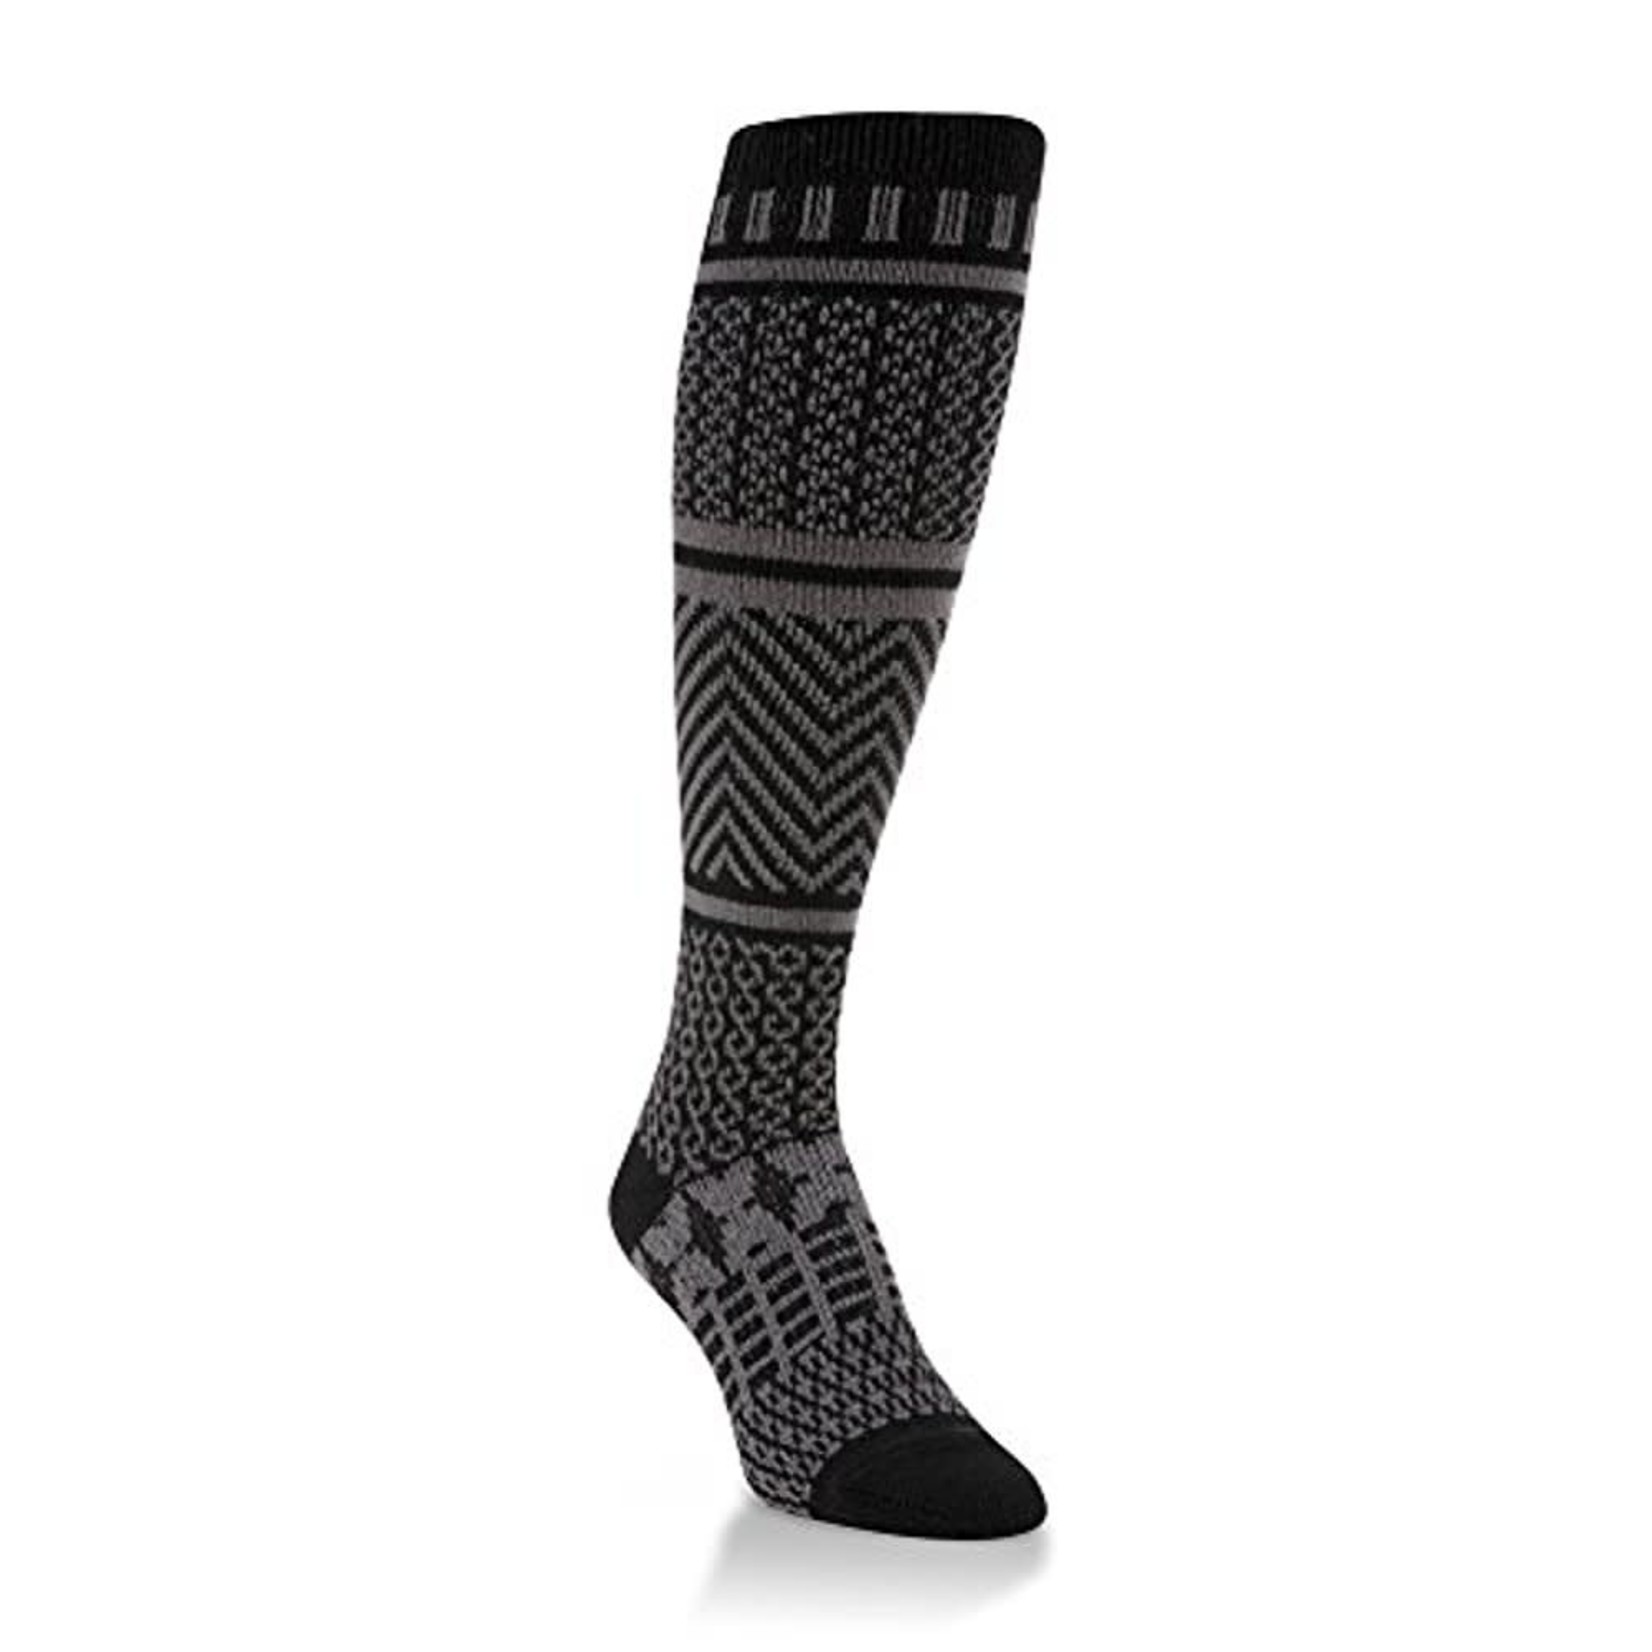 Black kneehi socks